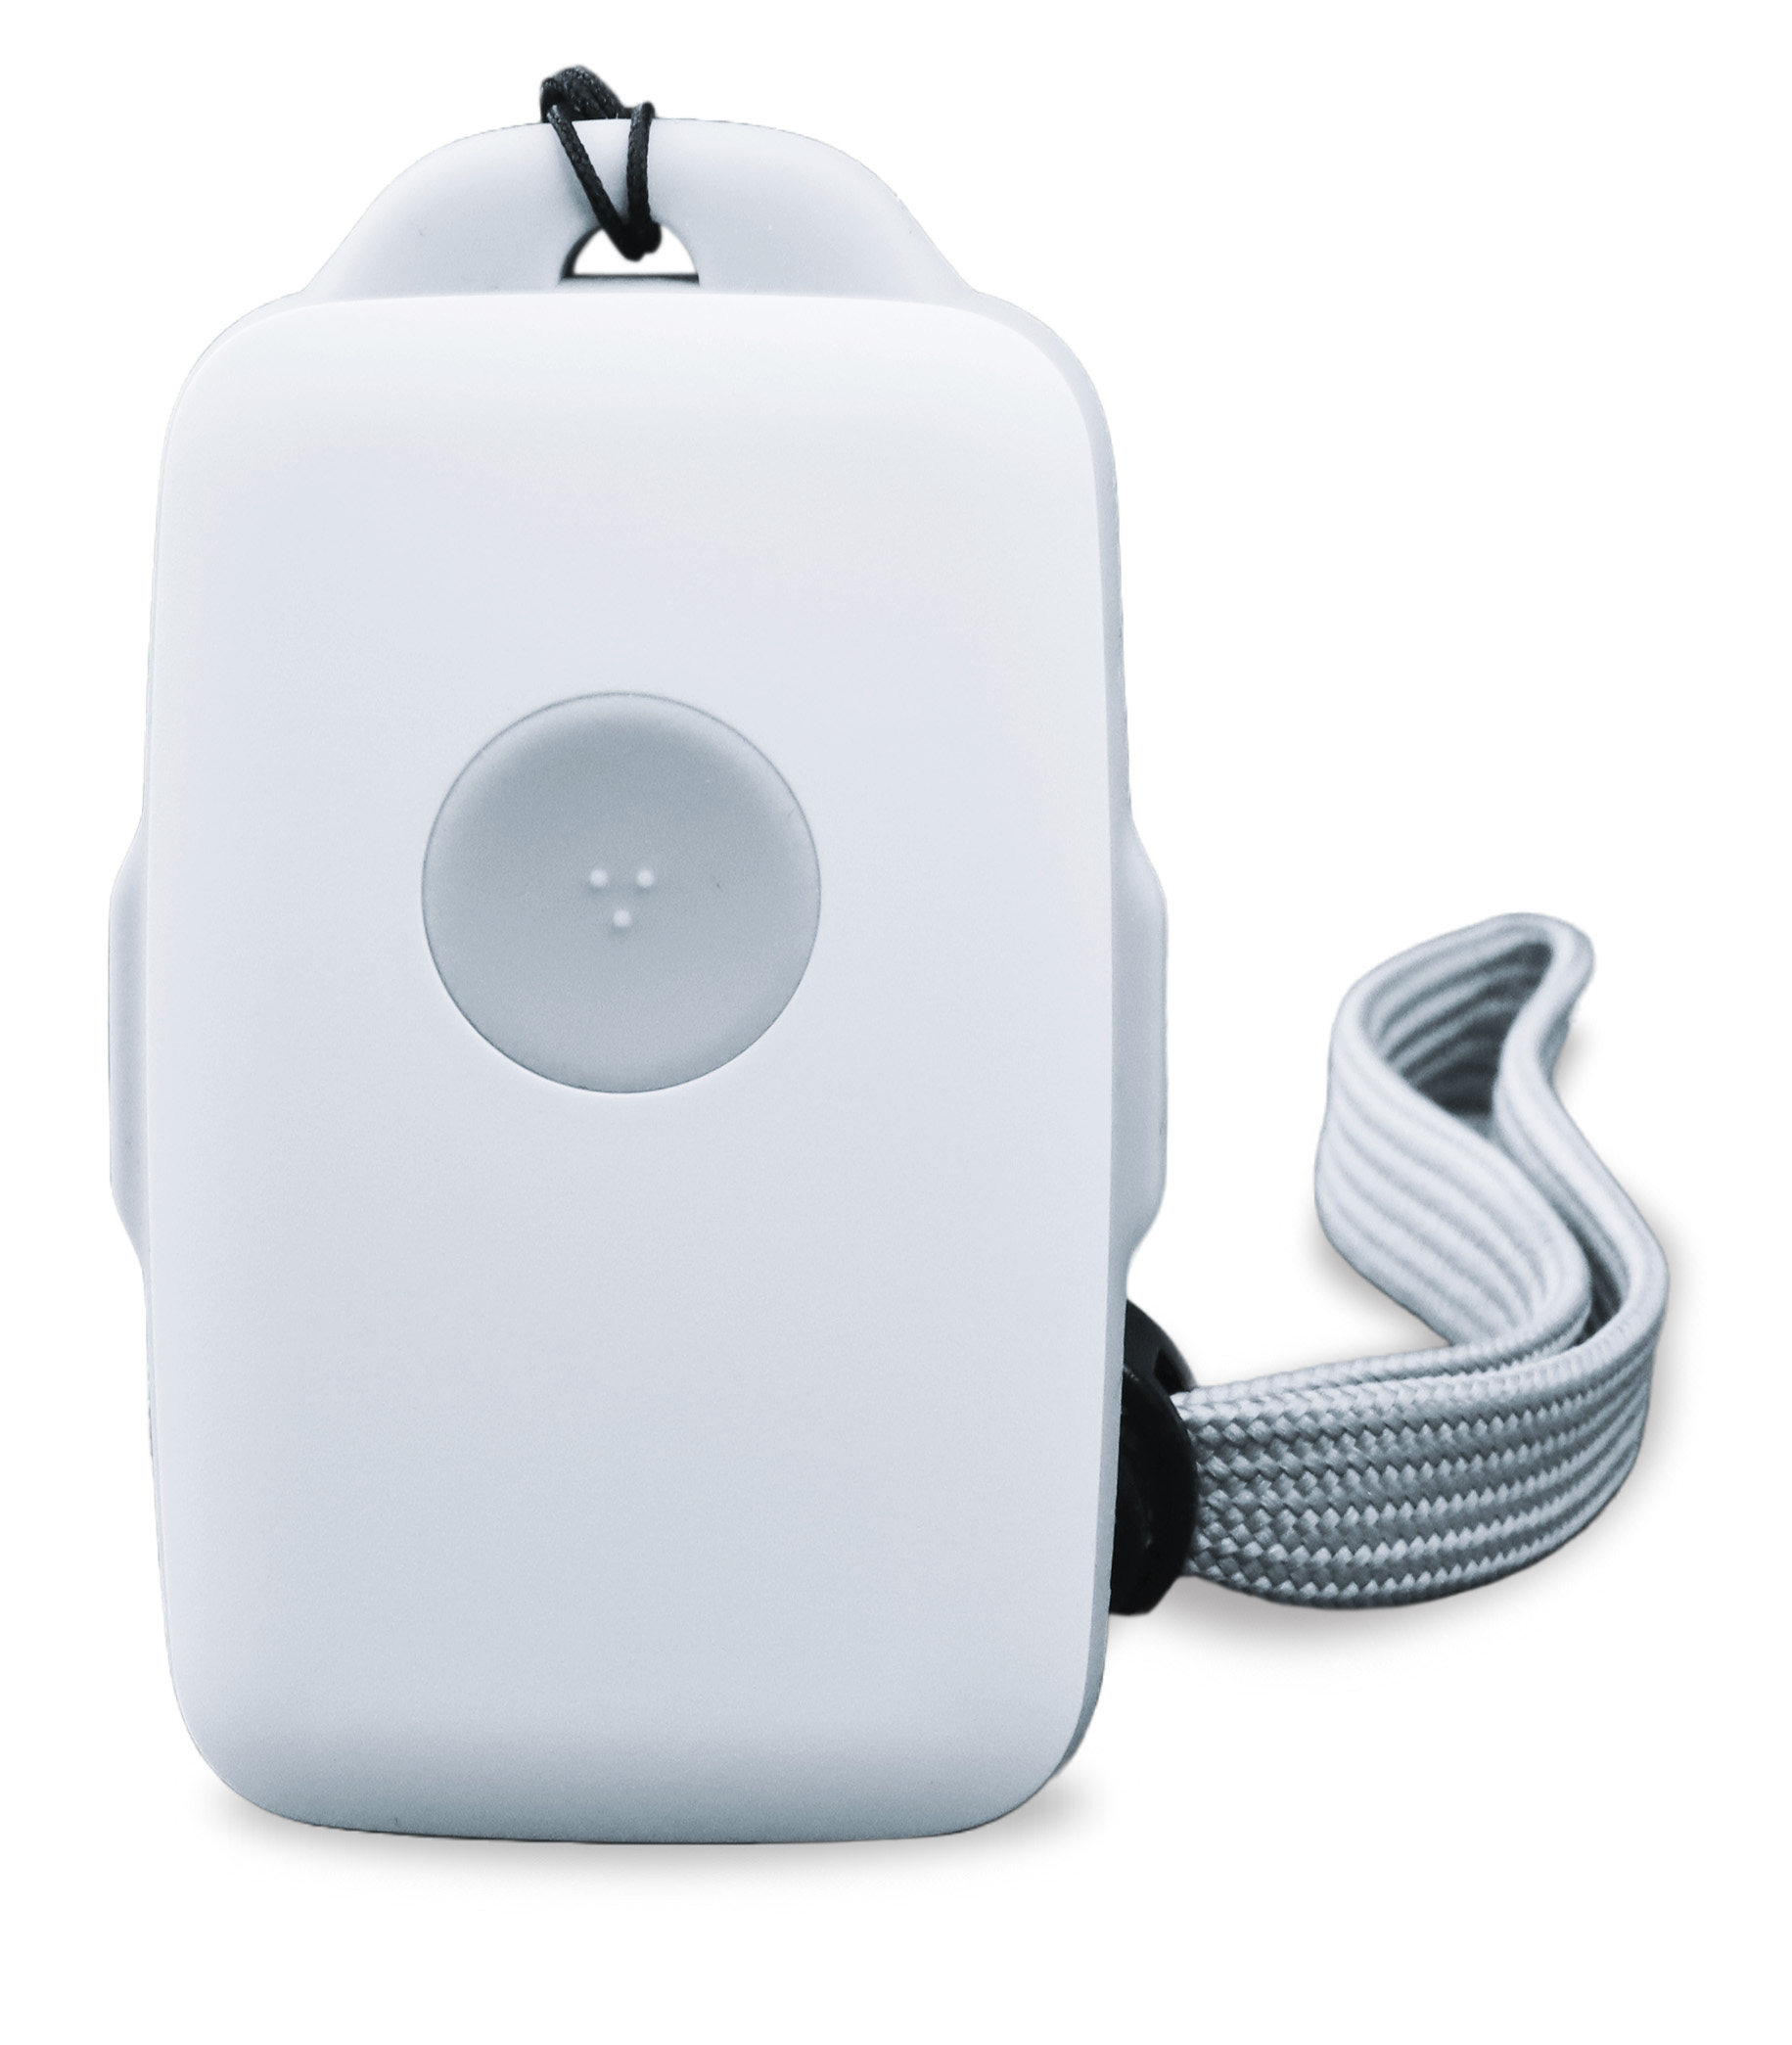 DA1432XL - Blindentelefon, Notrufsender, Sturzmelder - Produktansicht